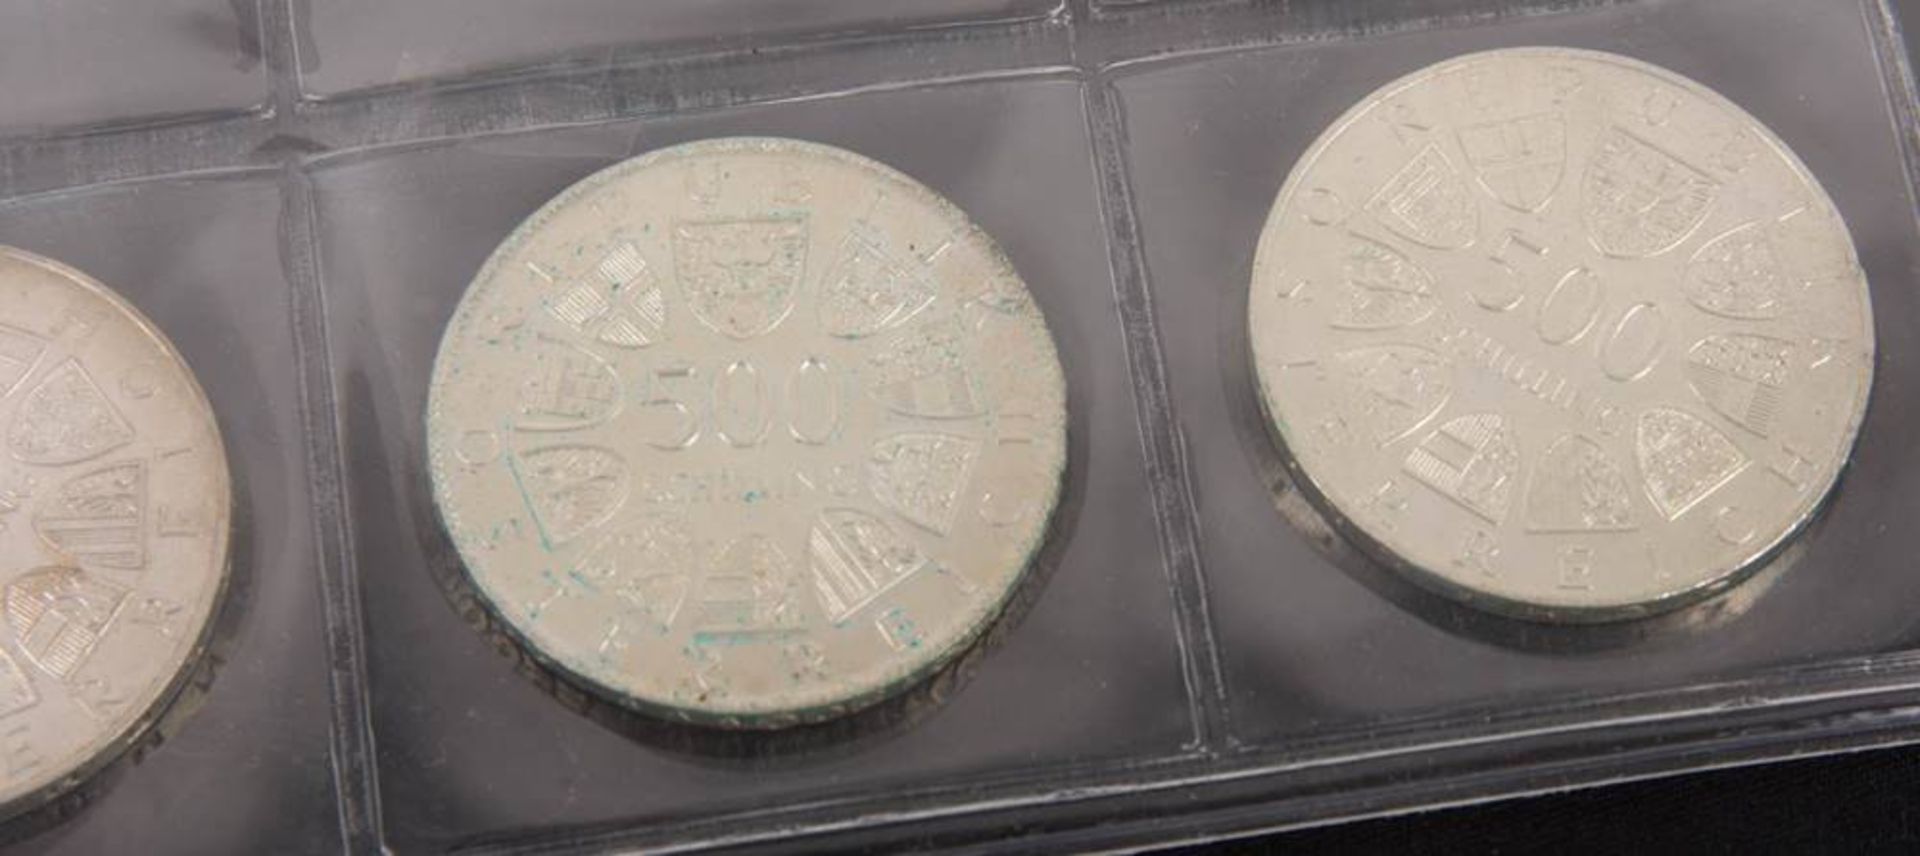 Österreich: Silbermünzen 2. Republik 12x500 ATS. - Bild 5 aus 5